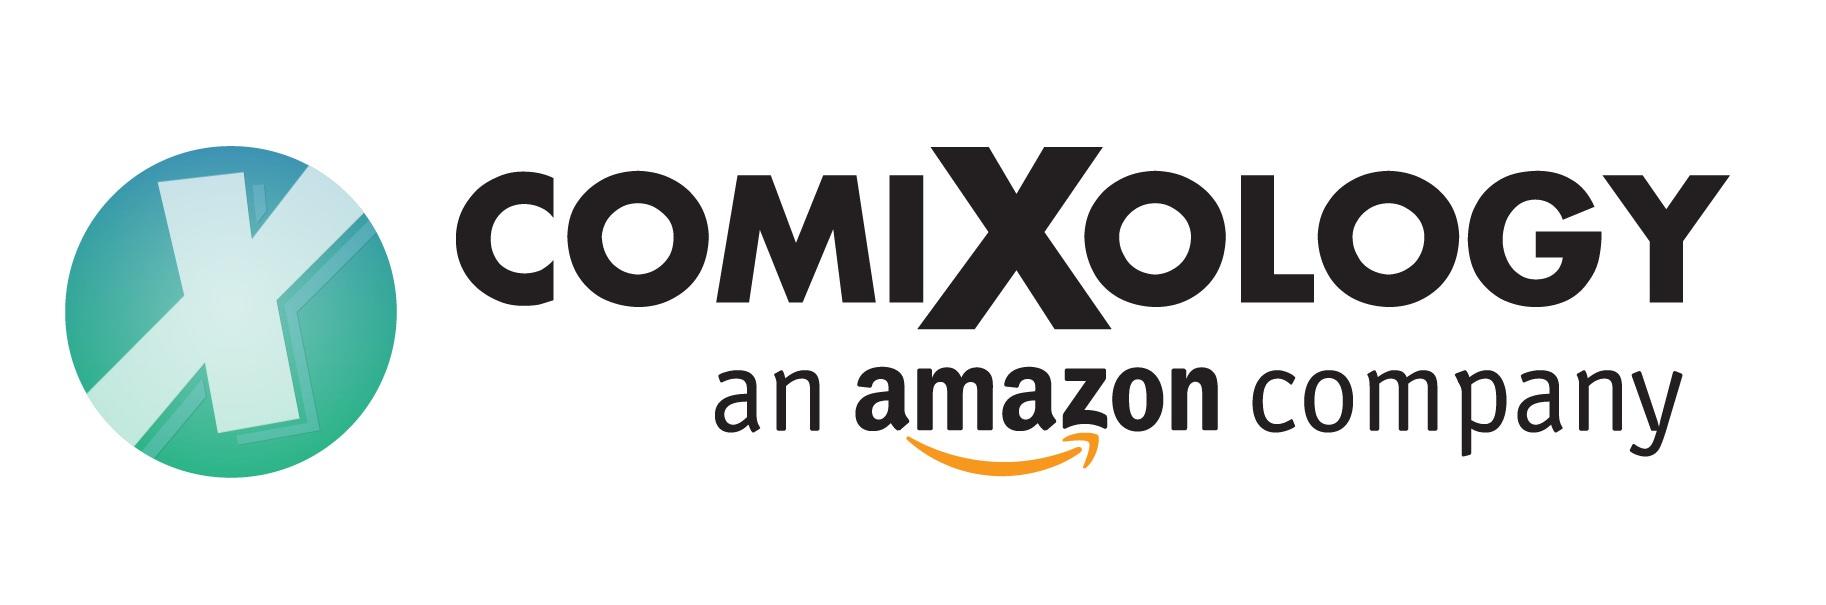 Amazon Comixology logo